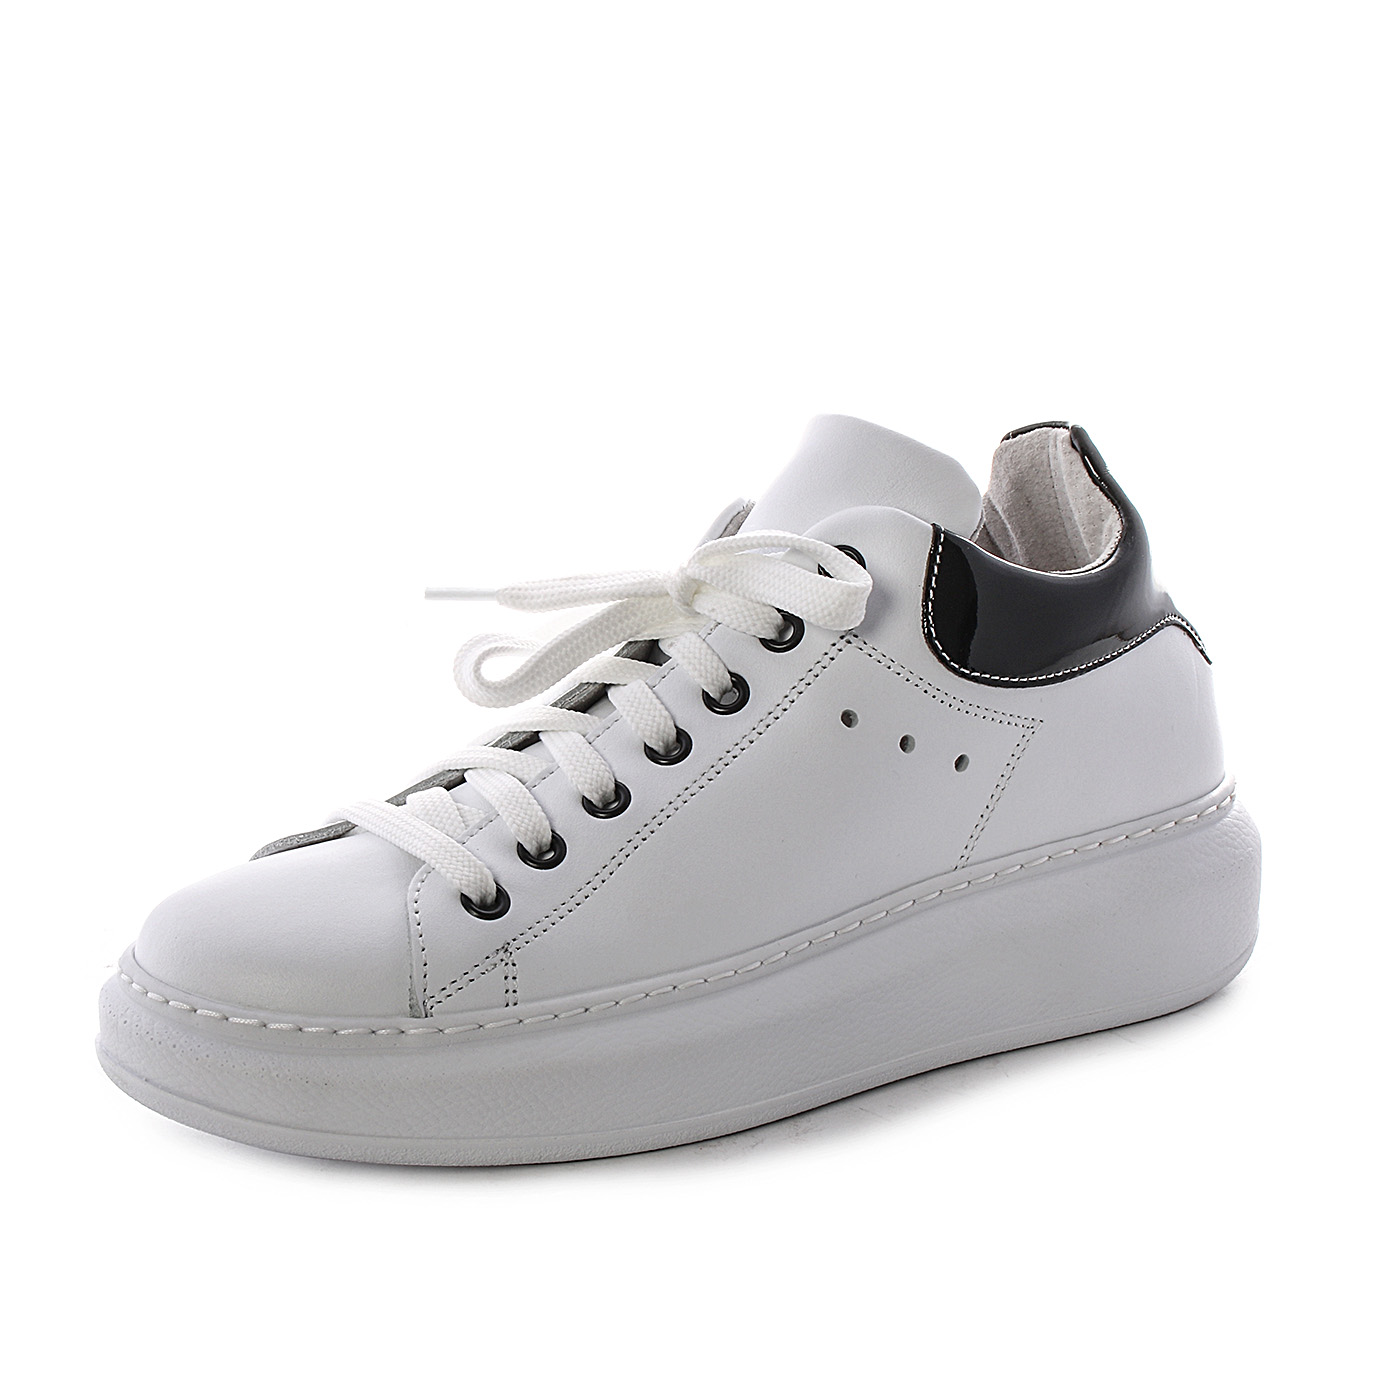 Divine Follie - Sneakers da donna con suola alta - Bianco - MitShopping -  Abbigliamento e scarpe